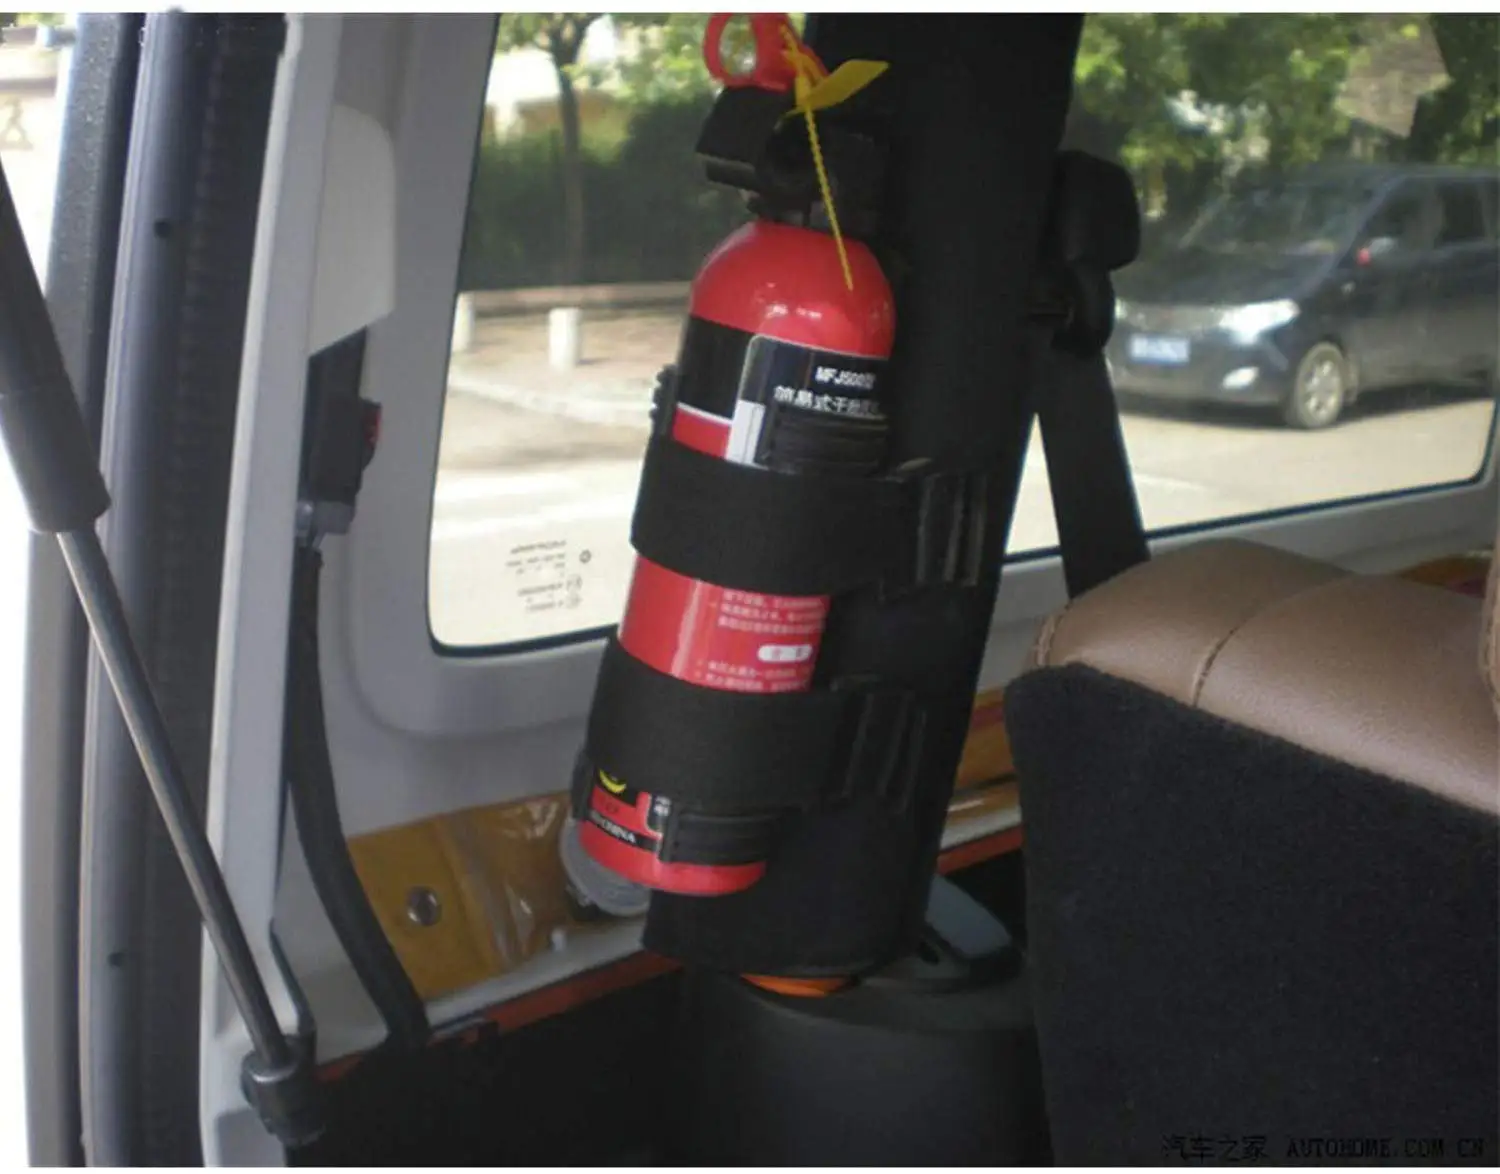 Details about   Car Roll Bar Fire Extinguisher Holder Mount Bracket Adjustable for Jeep Wrangler 